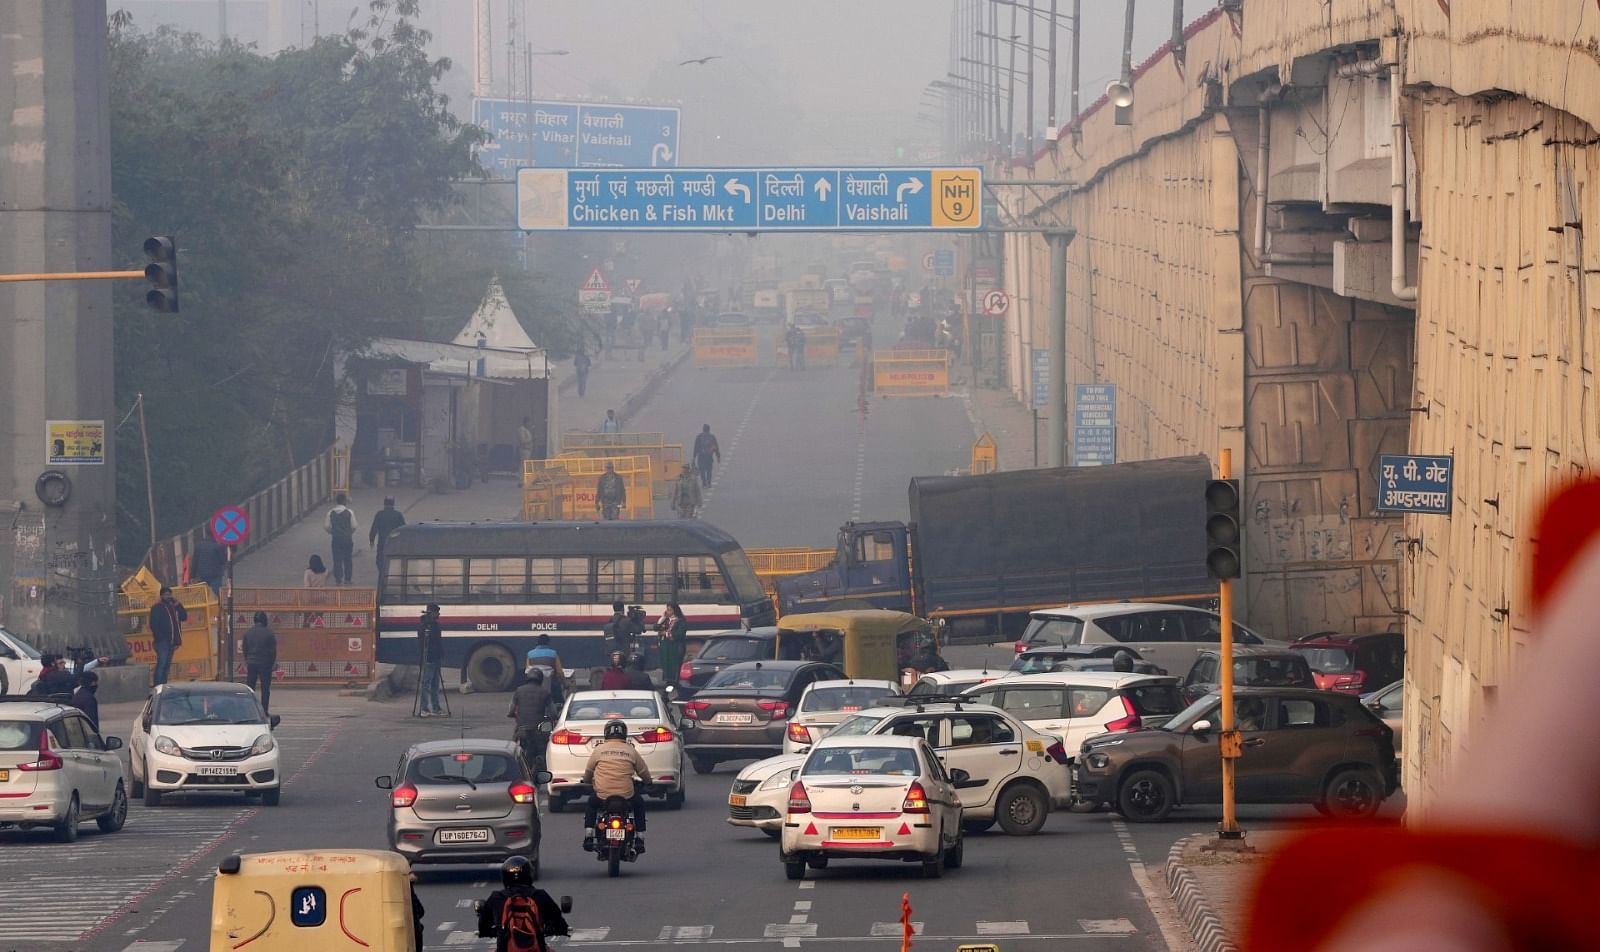 <div class="paragraphs"><p>किसानों की क्या हैं मांगे? दिल्ली की सीमाओं पर भारी सुरक्षा, ट्रैफिक एडवाईजरी जारी</p></div>